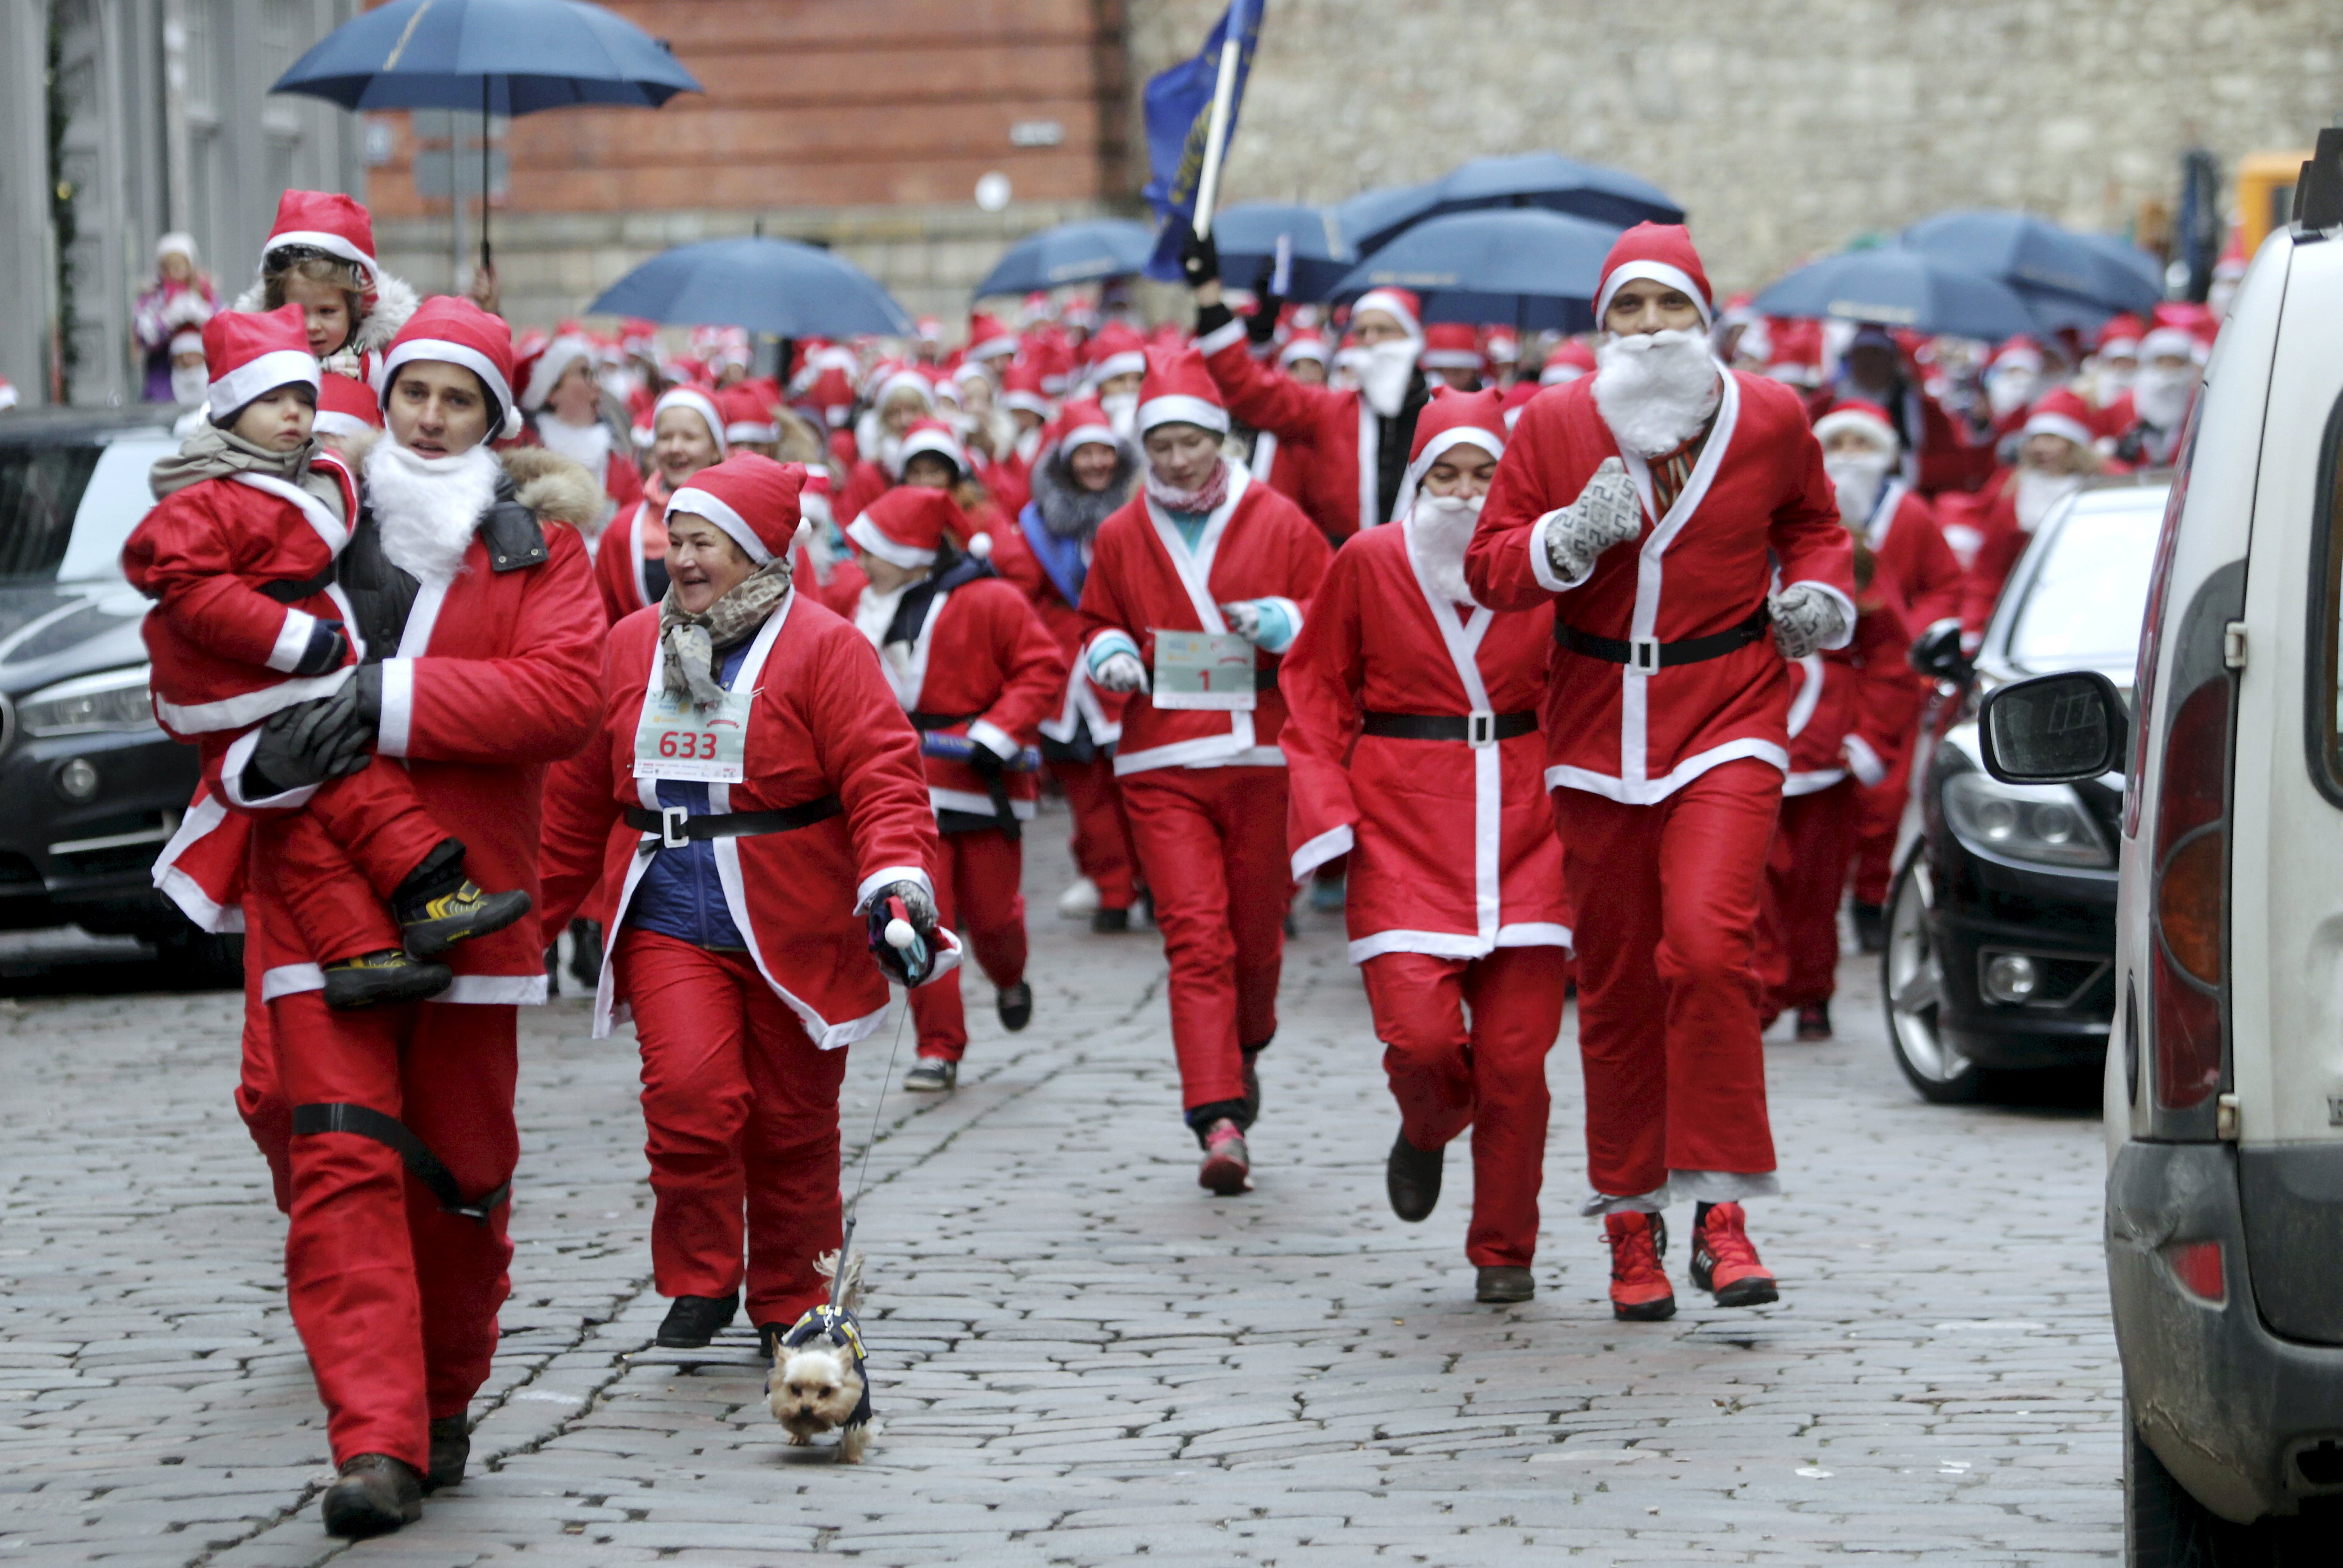 Χριστουγεννιάτικοι αγώνες δρόμου ανάμεσα σε χιλιάδες Άη Βασίληδες